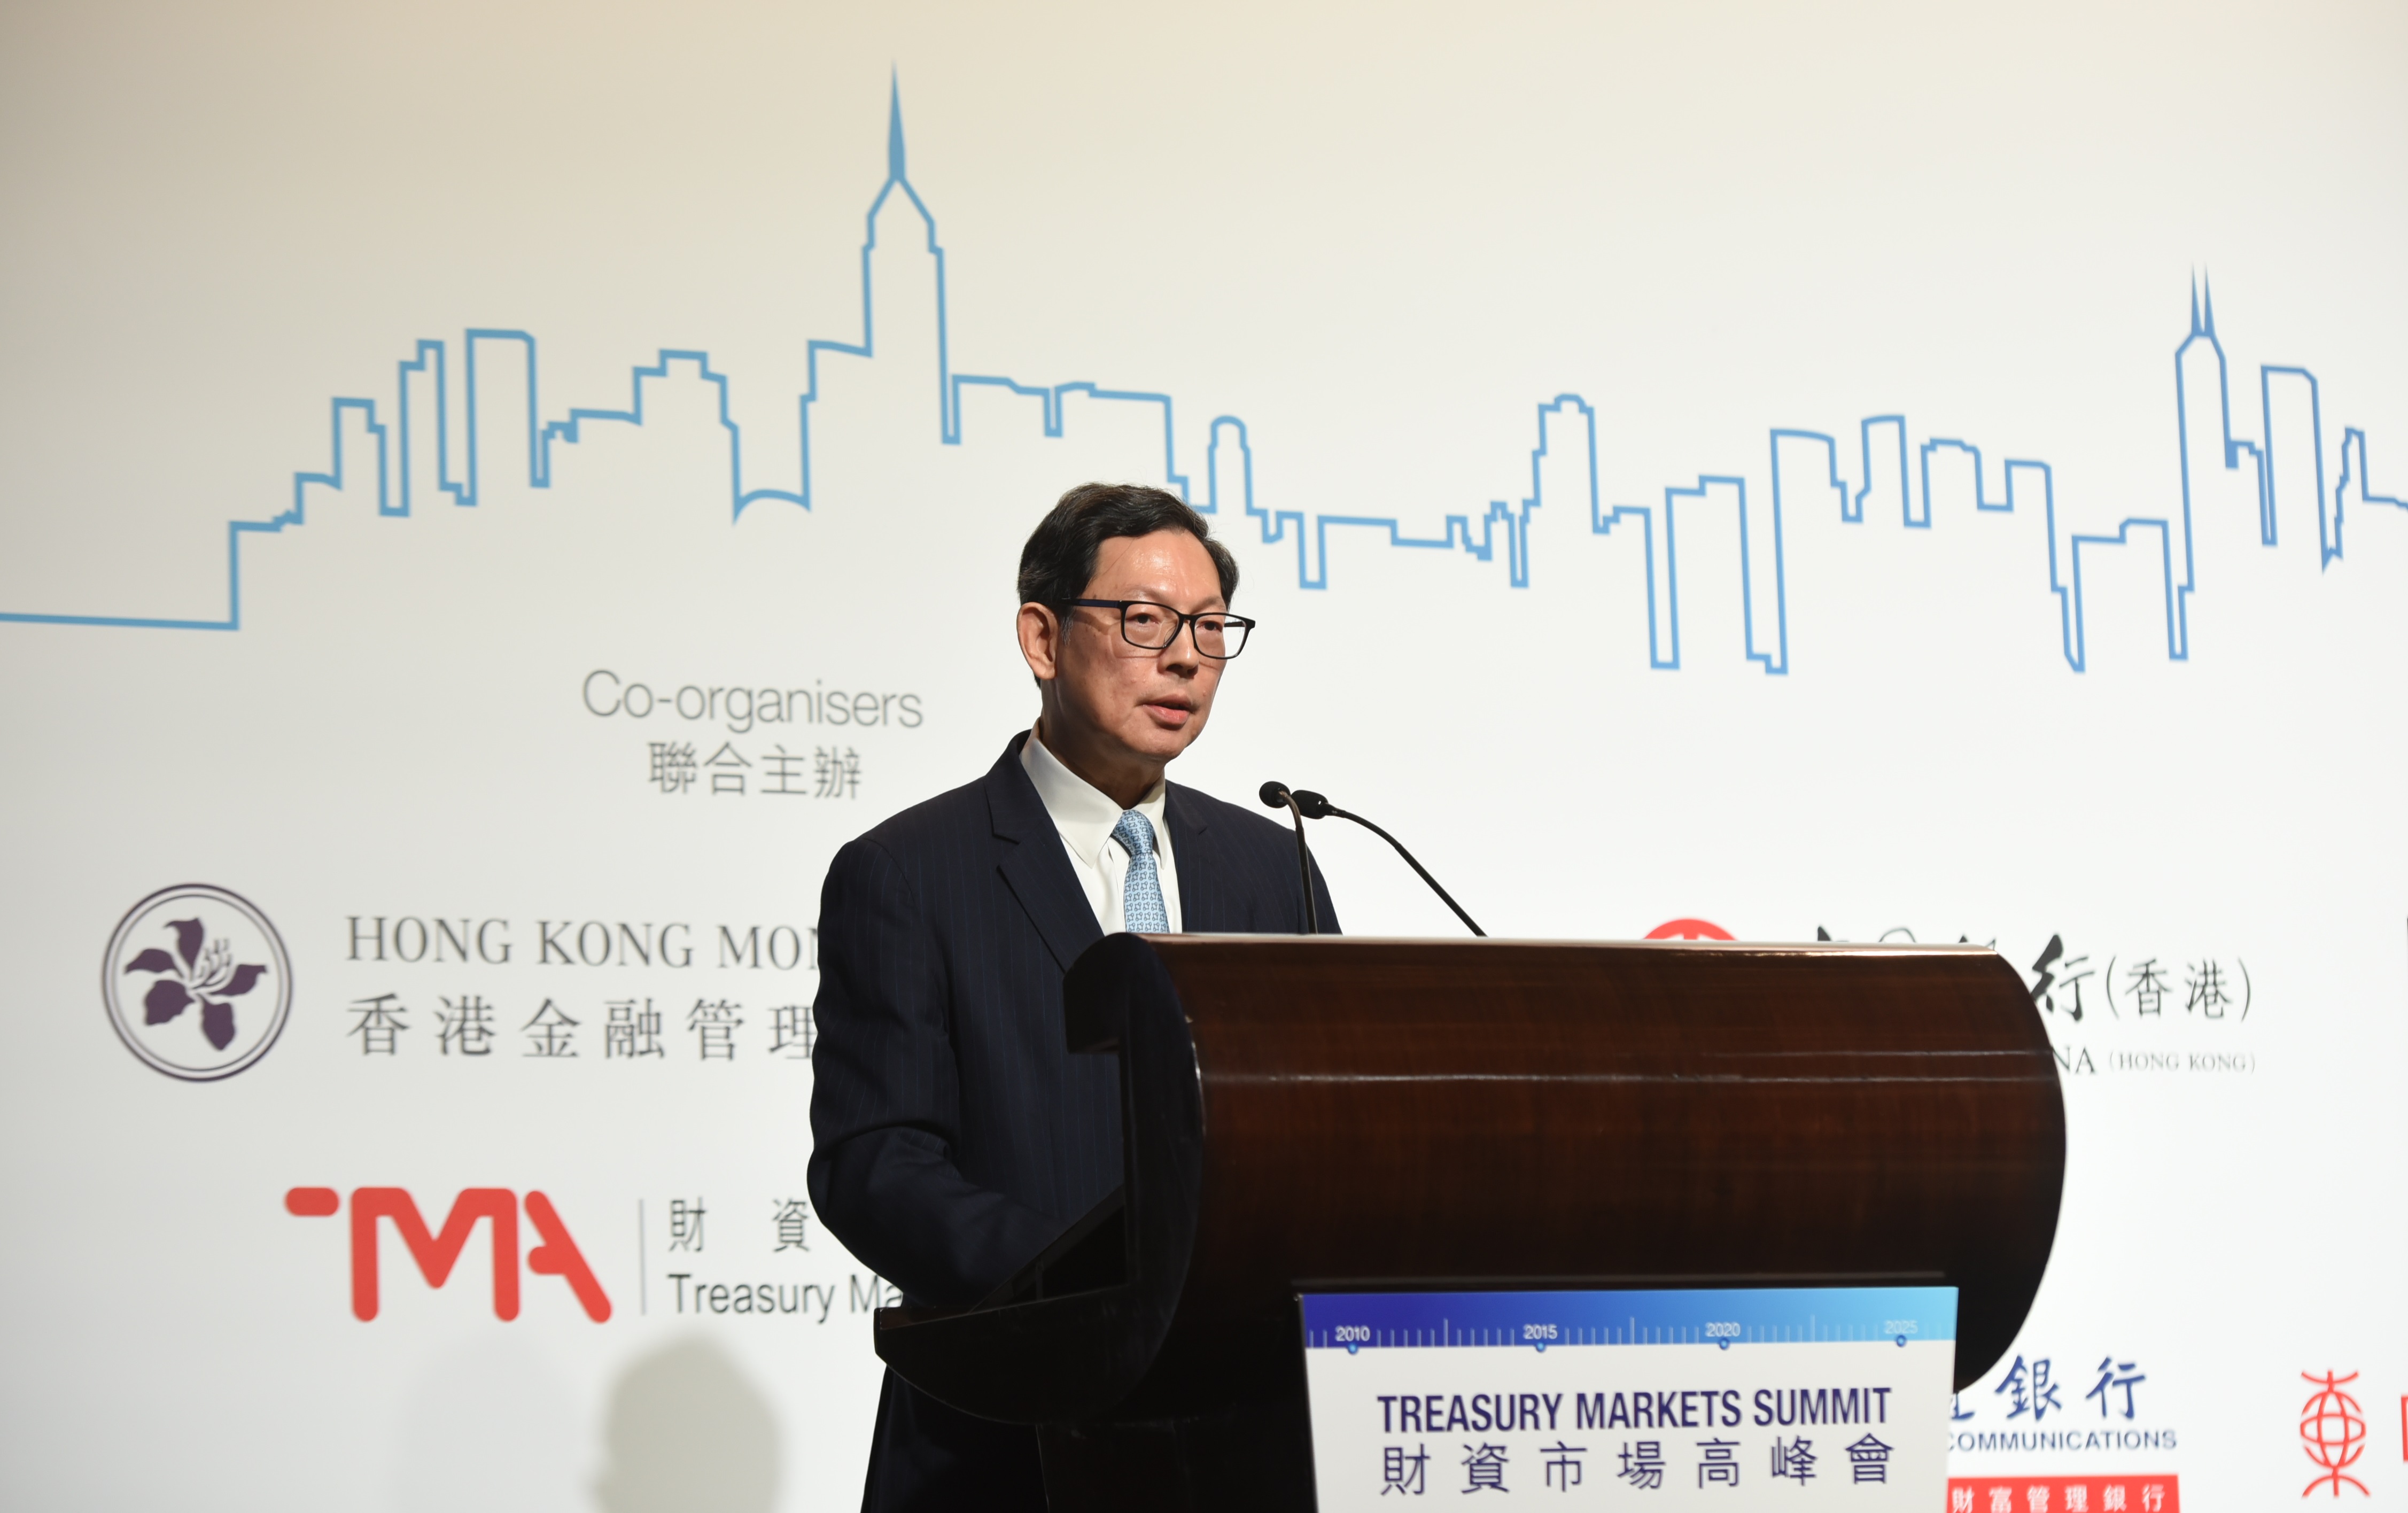 金管局總裁陳德霖先生在香港舉行的2019財資市場高峰會上致歡迎辭及發表主題演講。